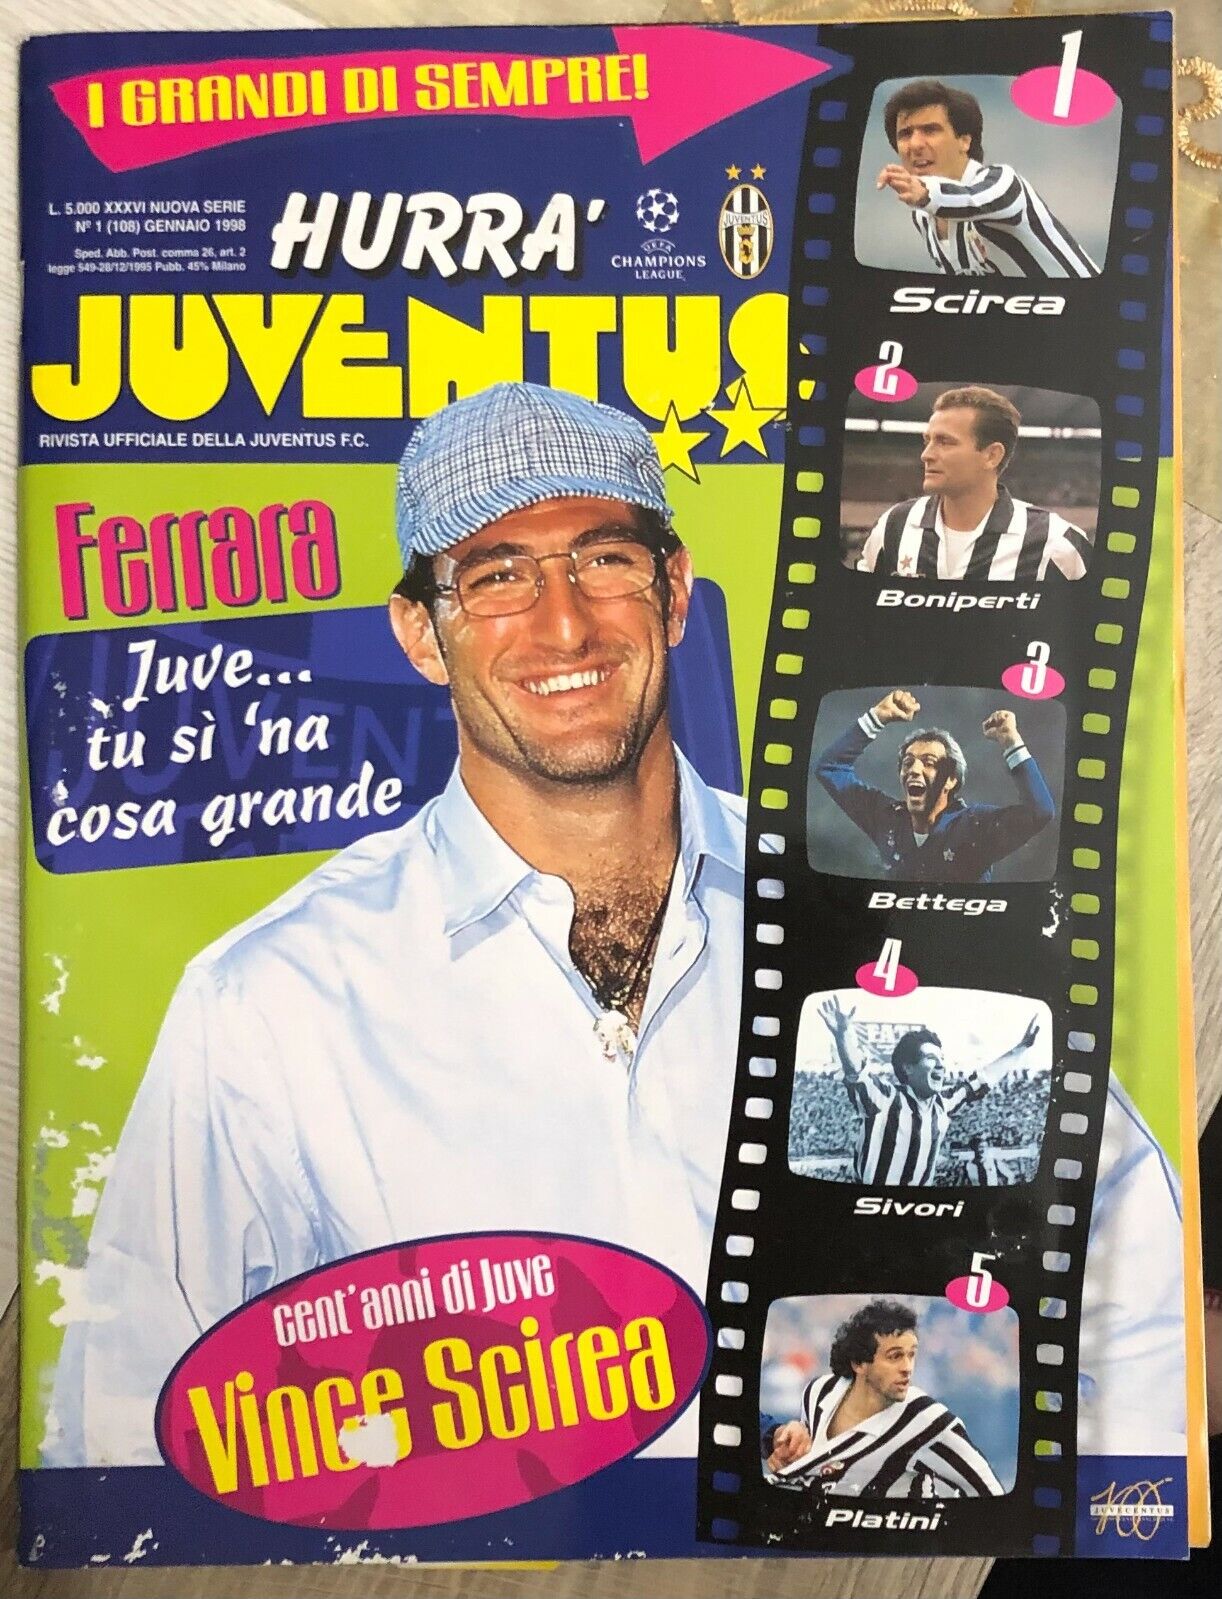 Hurr? Juventus n. 1/1998 di Aa.vv.,  1998,  Juventus F.c.